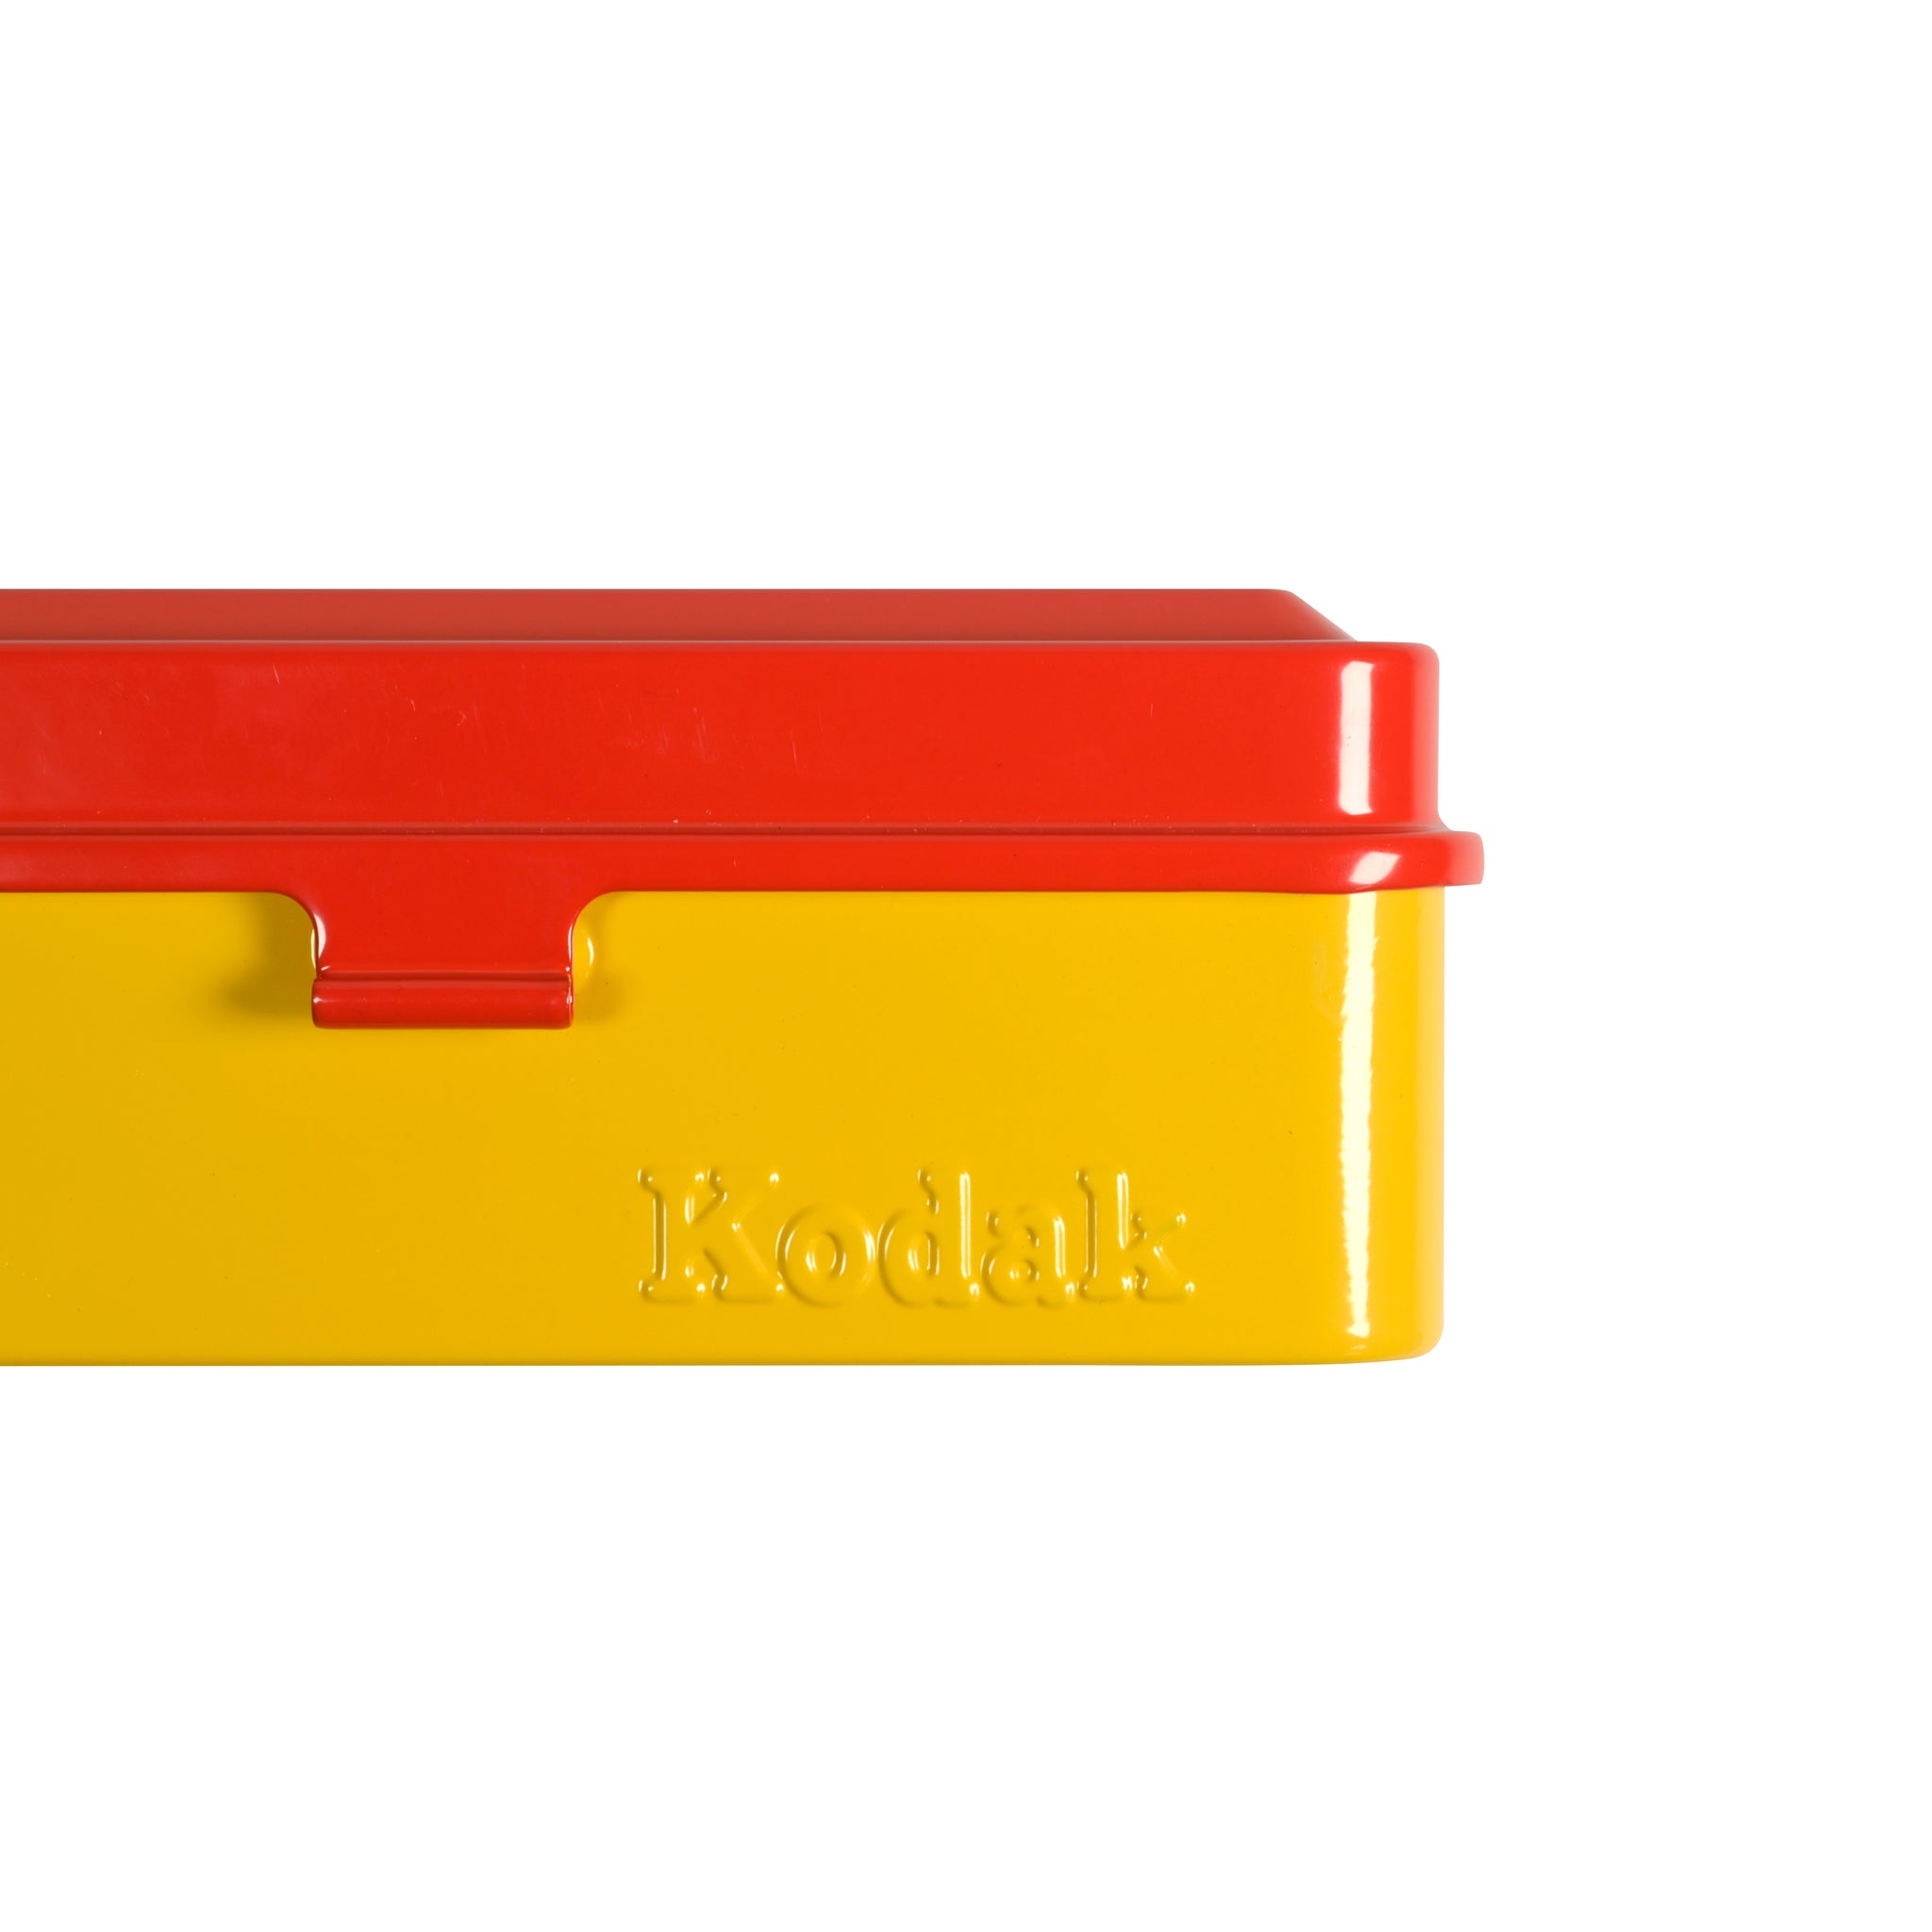 Kodak Steel 120/135 Film Case (Red Lid/Yellow Body)